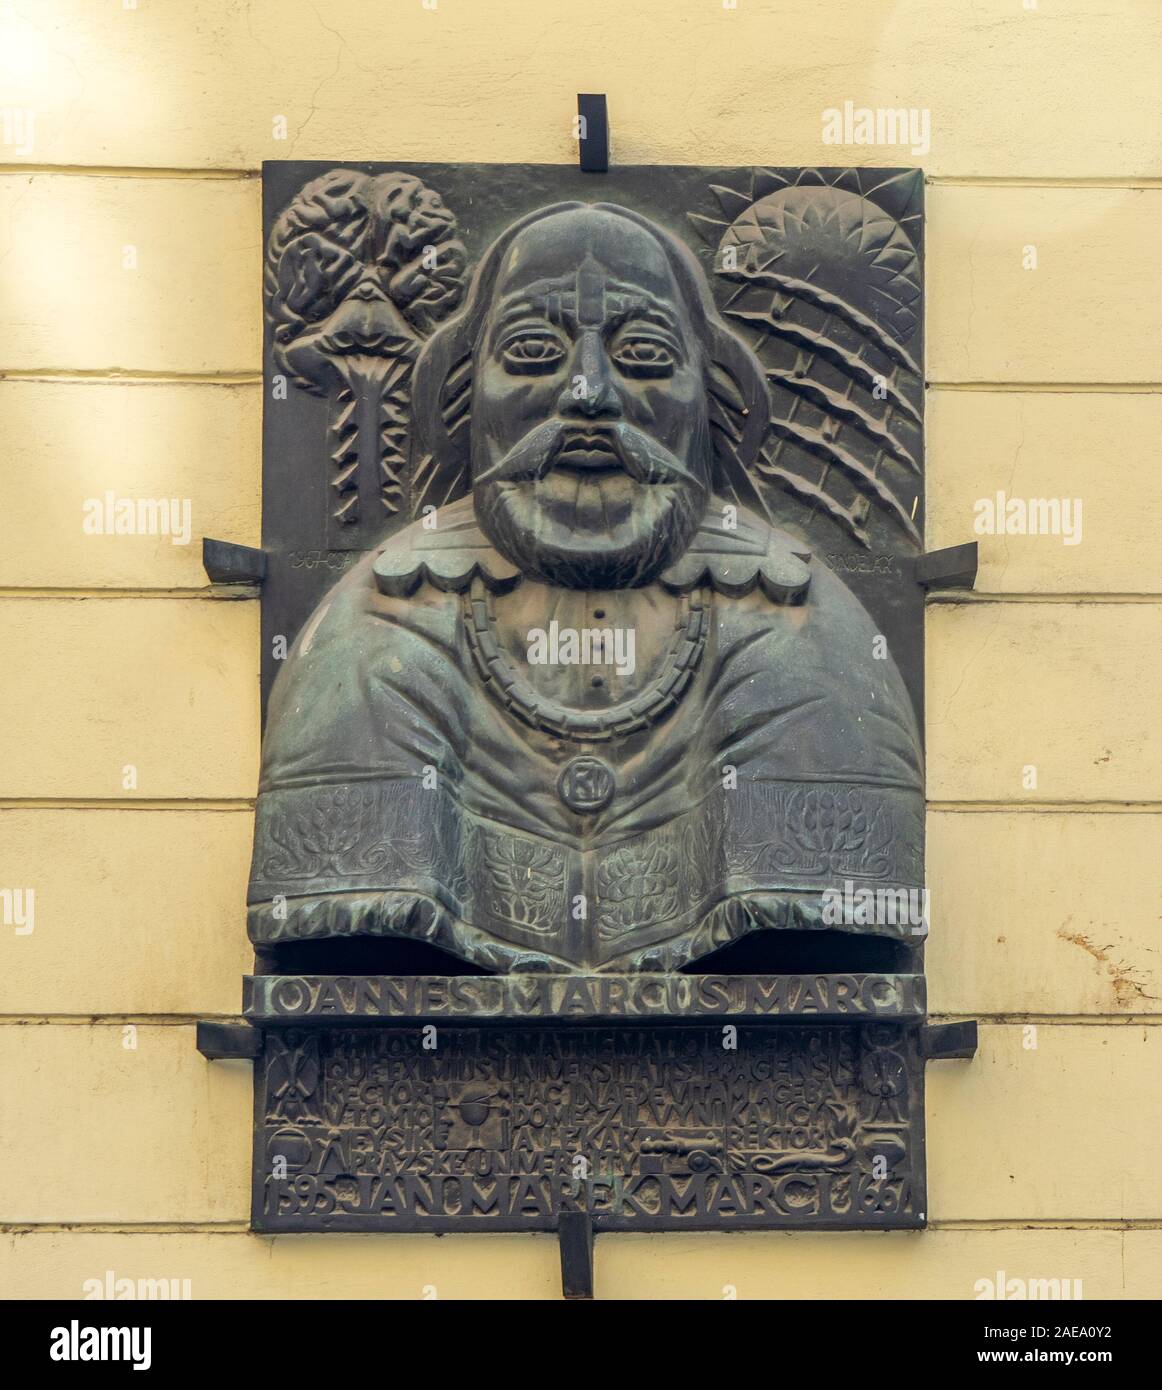 Plaque de bronze buste de Johannes Marcus Marci de Cronland dans Melantrichova Street Old Town Prague République tchèque. Banque D'Images